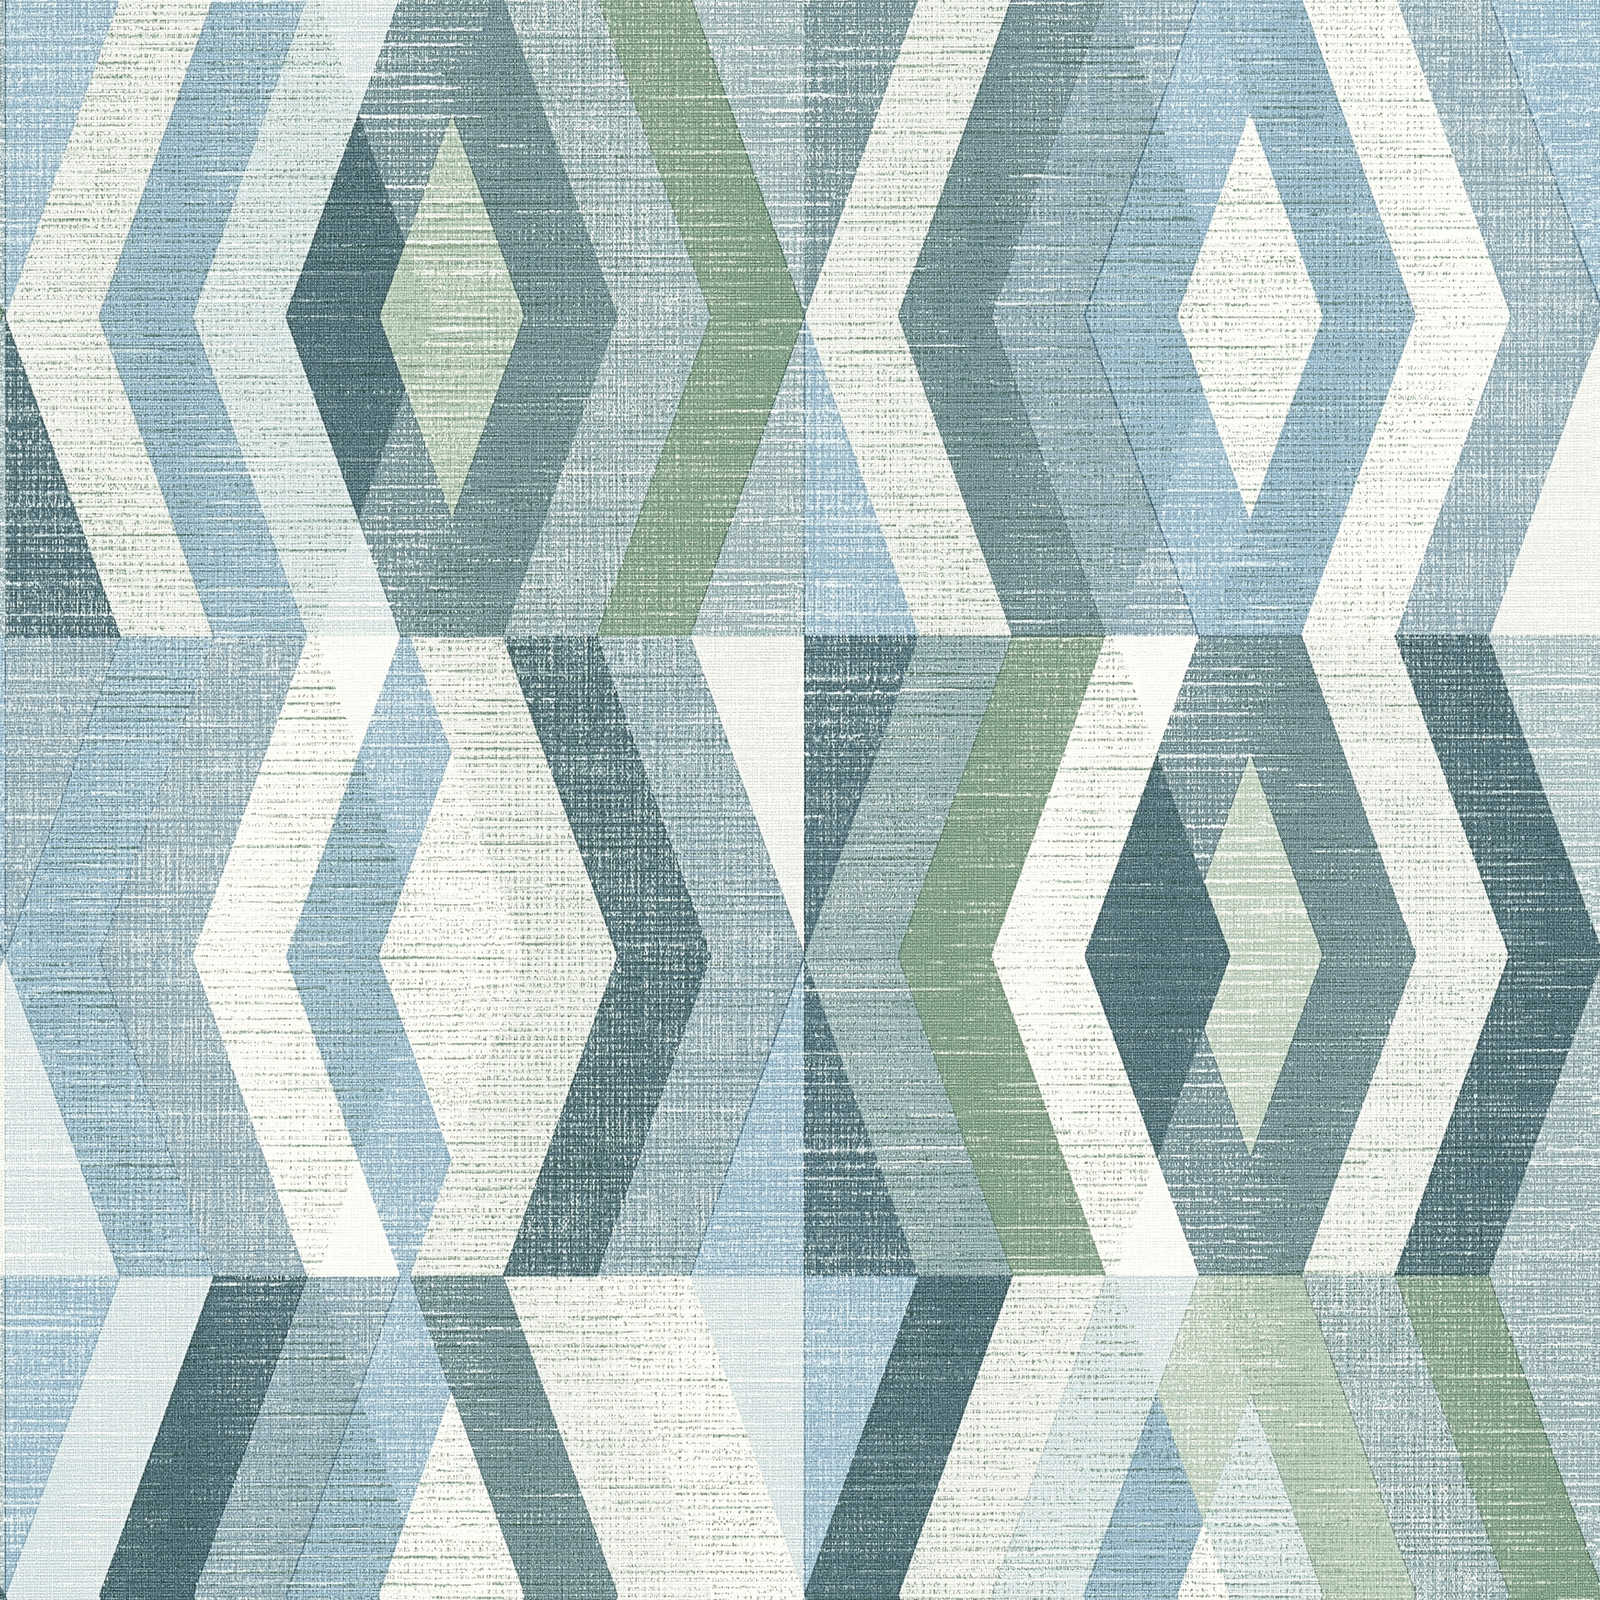 Tapete Leinenoptik mit Muster im Scandinavian Style - Blau, Weiß, Grün
